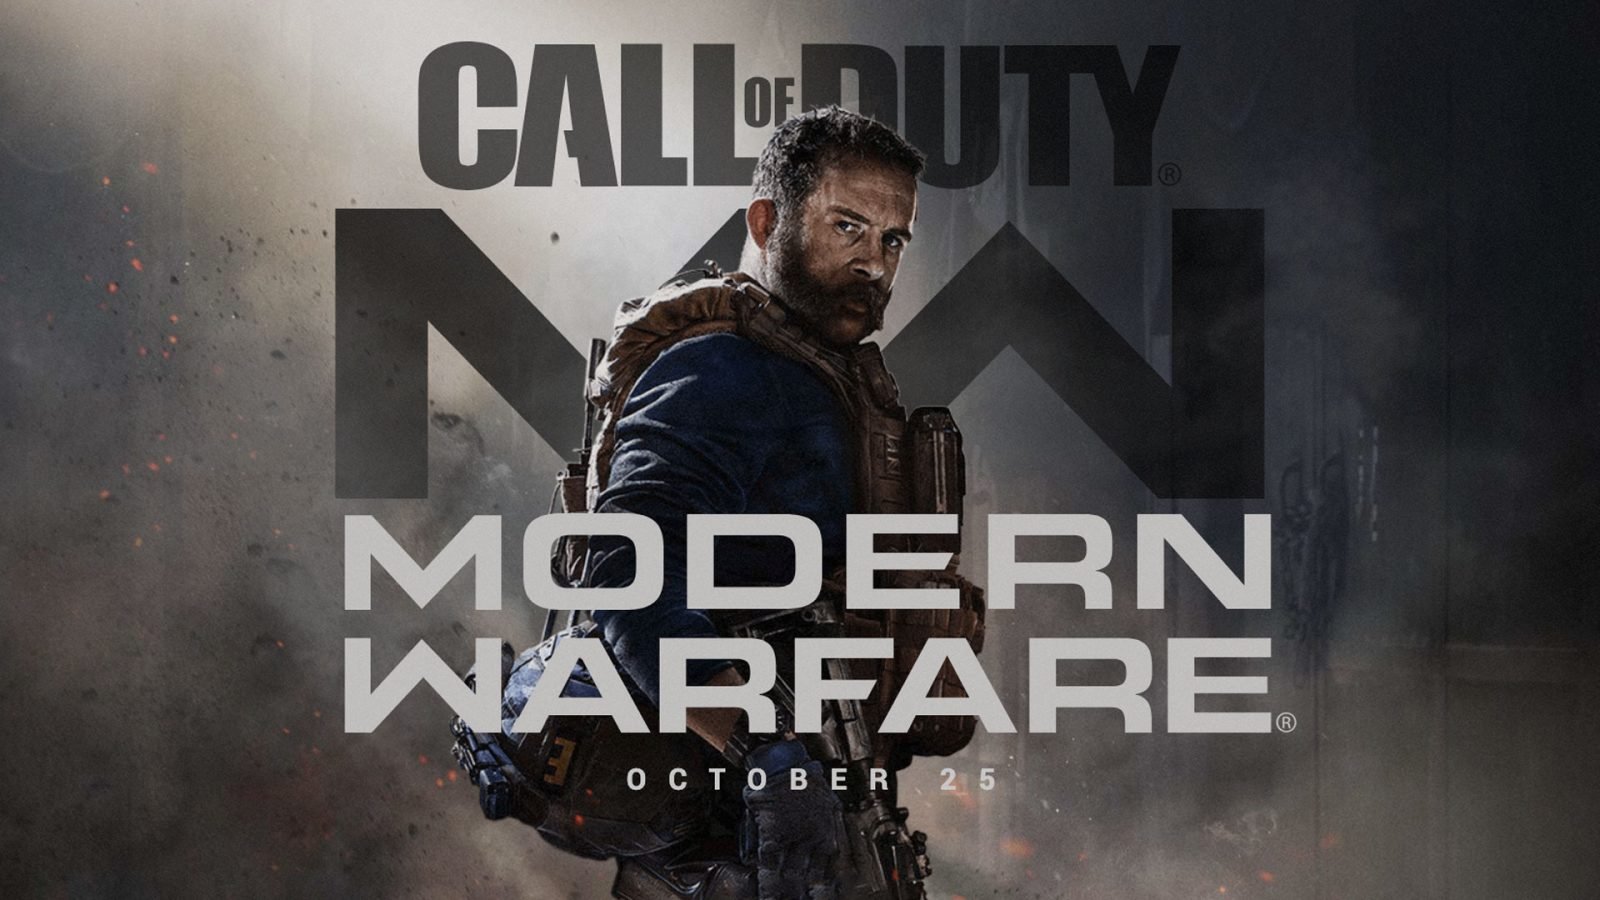 Call of Duty Modern Warfare Release